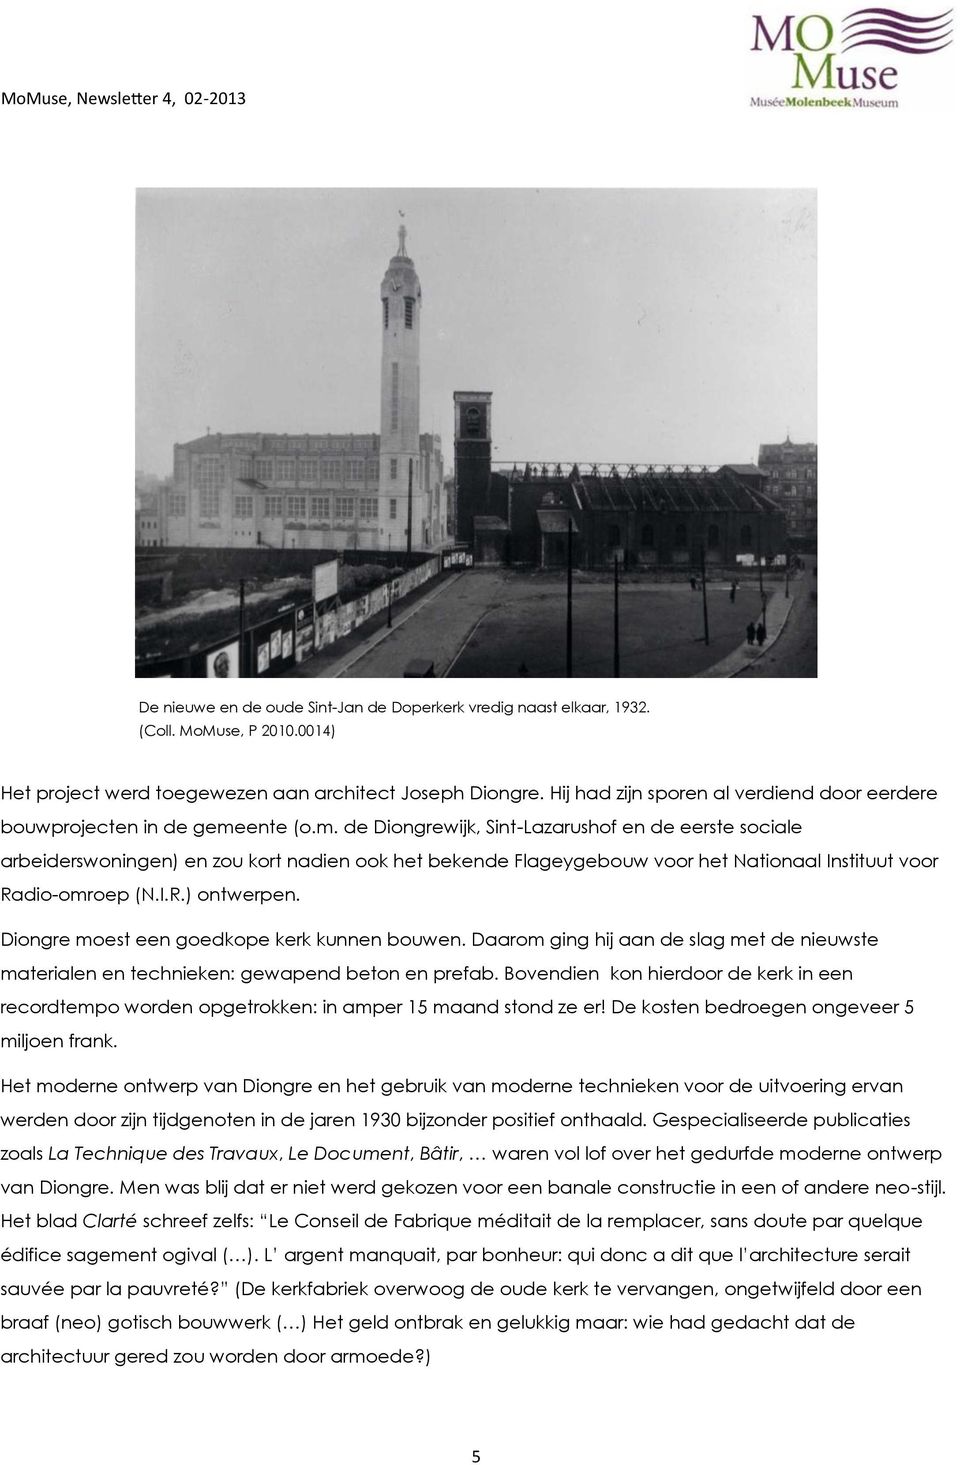 ente (o.m. de Diongrewijk, Sint-Lazarushof en de eerste sociale arbeiderswoningen) en zou kort nadien ook het bekende Flageygebouw voor het Nationaal Instituut voor Radio-omroep (N.I.R.) ontwerpen.